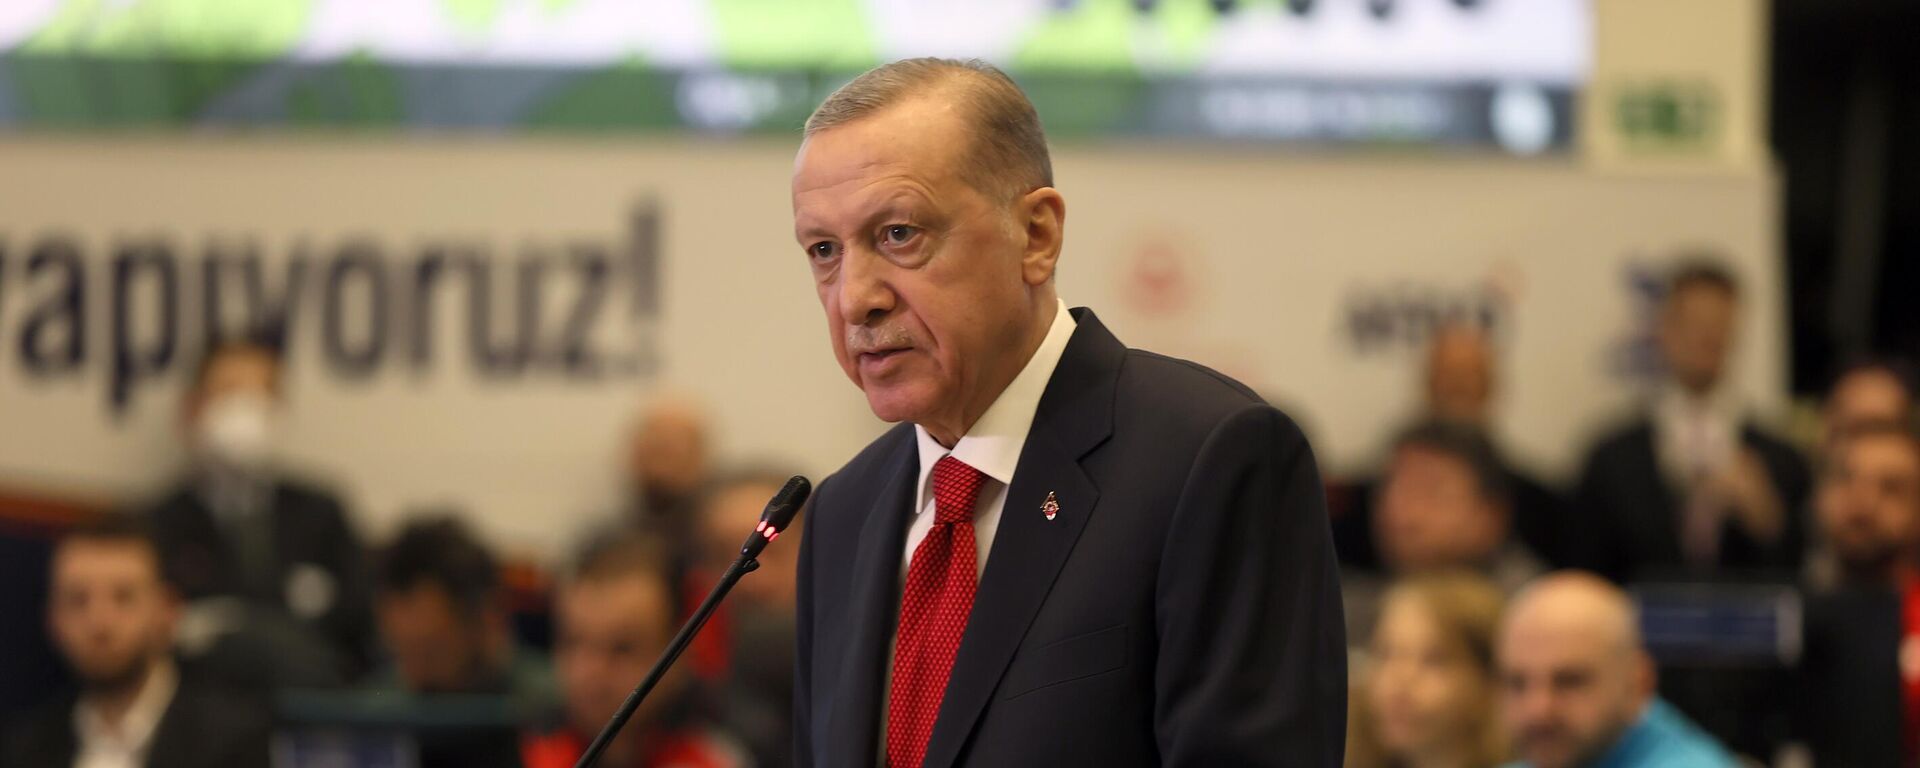 Cumhurbaşkanı Recep Tayyip Erdoğan, Kahramanmaraş merkezli depremlerin koordine edildiği AFAD Merkez Binası'ndaki Kabine Toplantısı'nın ardından açıklamalarda bulundu.  - Sputnik Türkiye, 1920, 14.02.2023